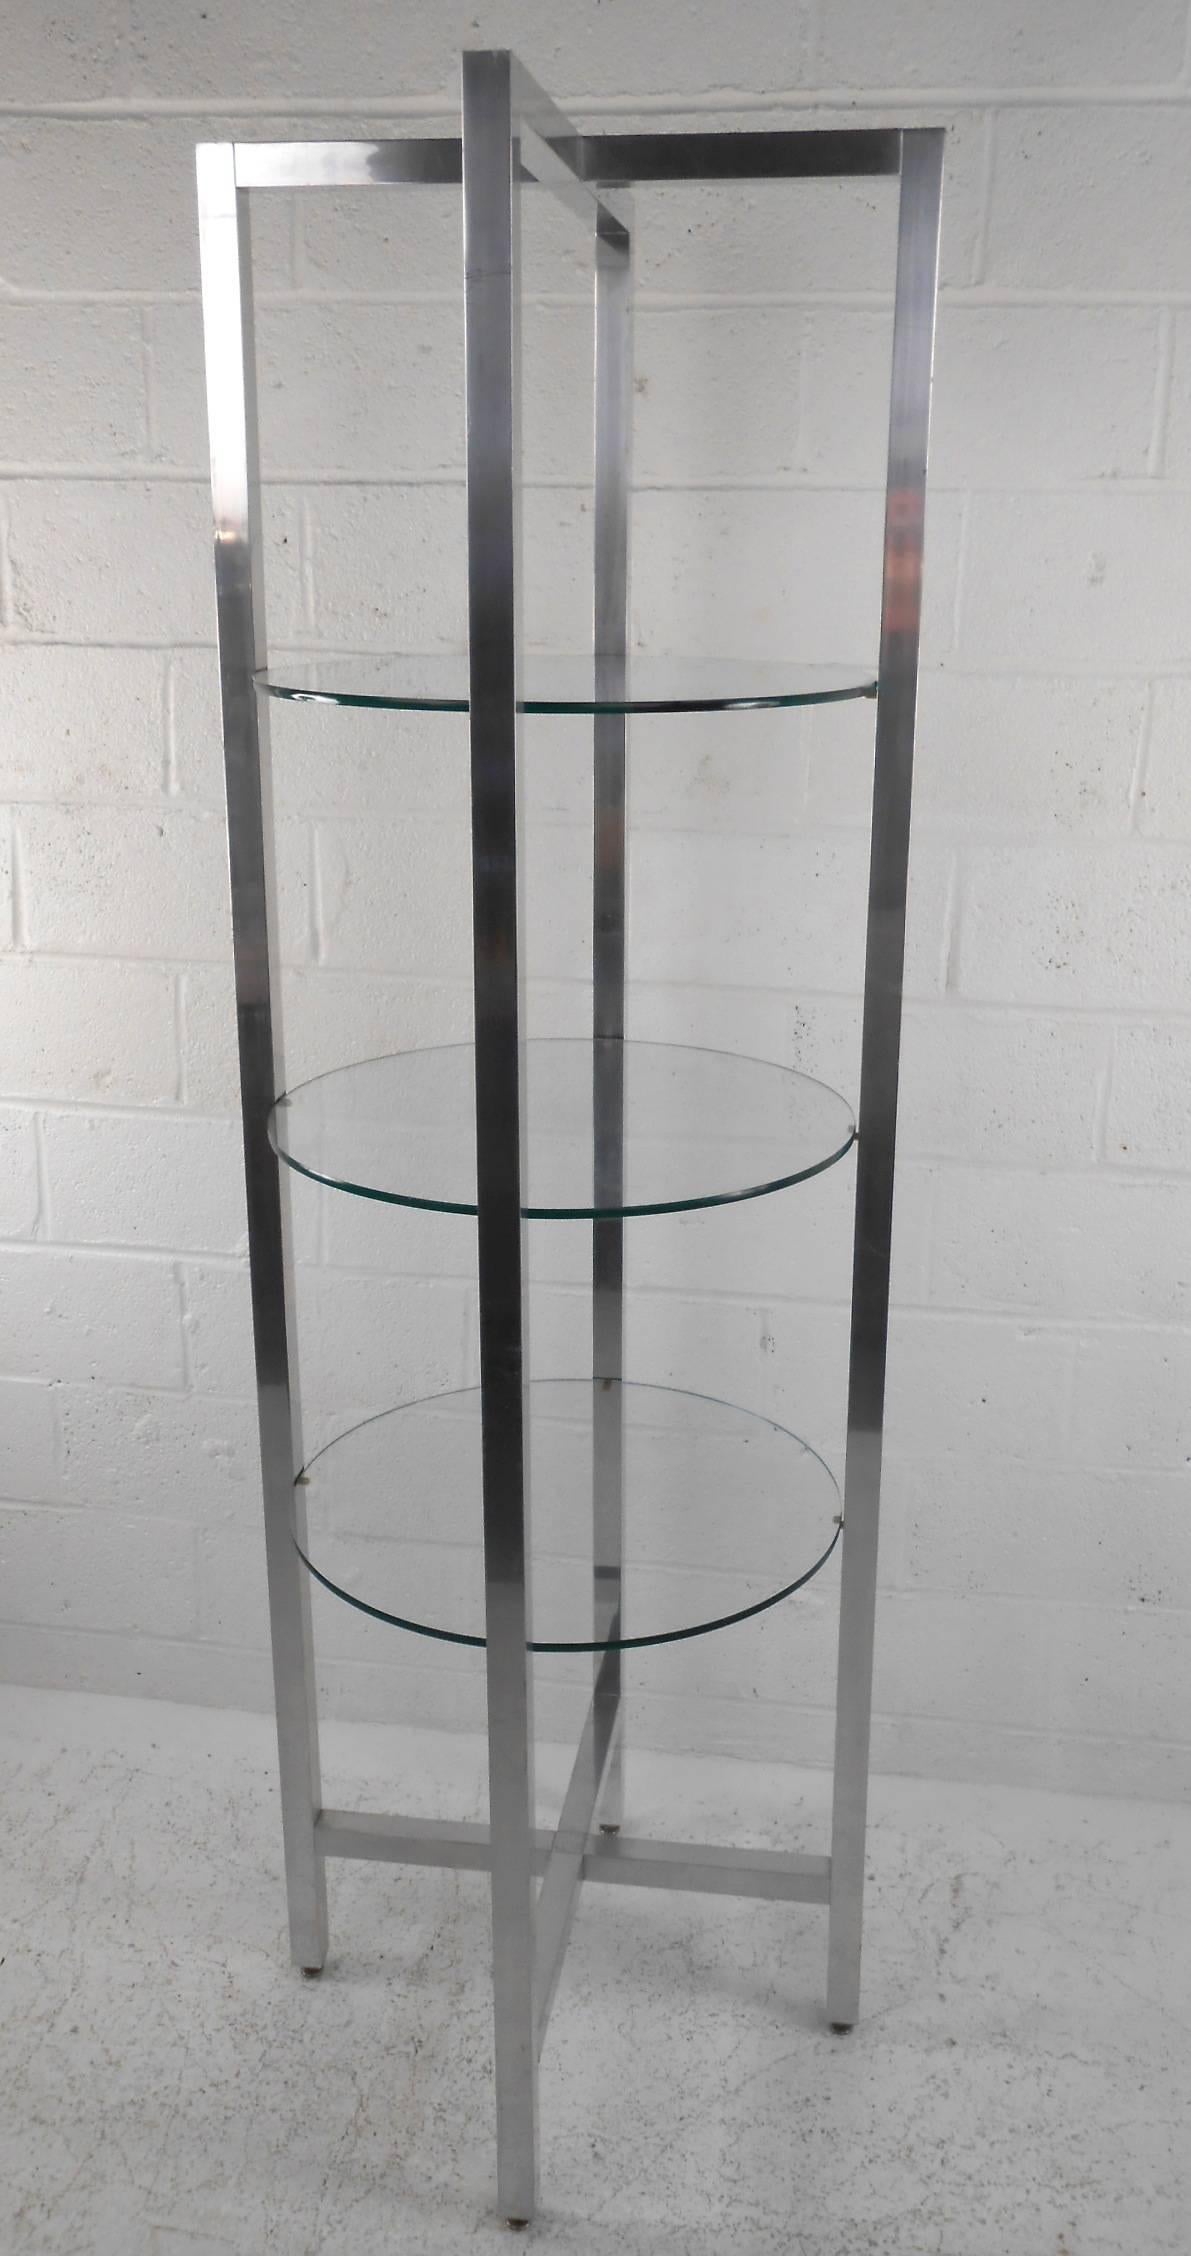 Cette belle étagère vintage moderne présente un lourd cadre circulaire chromé avec trois étagères rondes en verre. Design/One avec quatre supports allant de bas en haut et formant une section transversale en forme de 